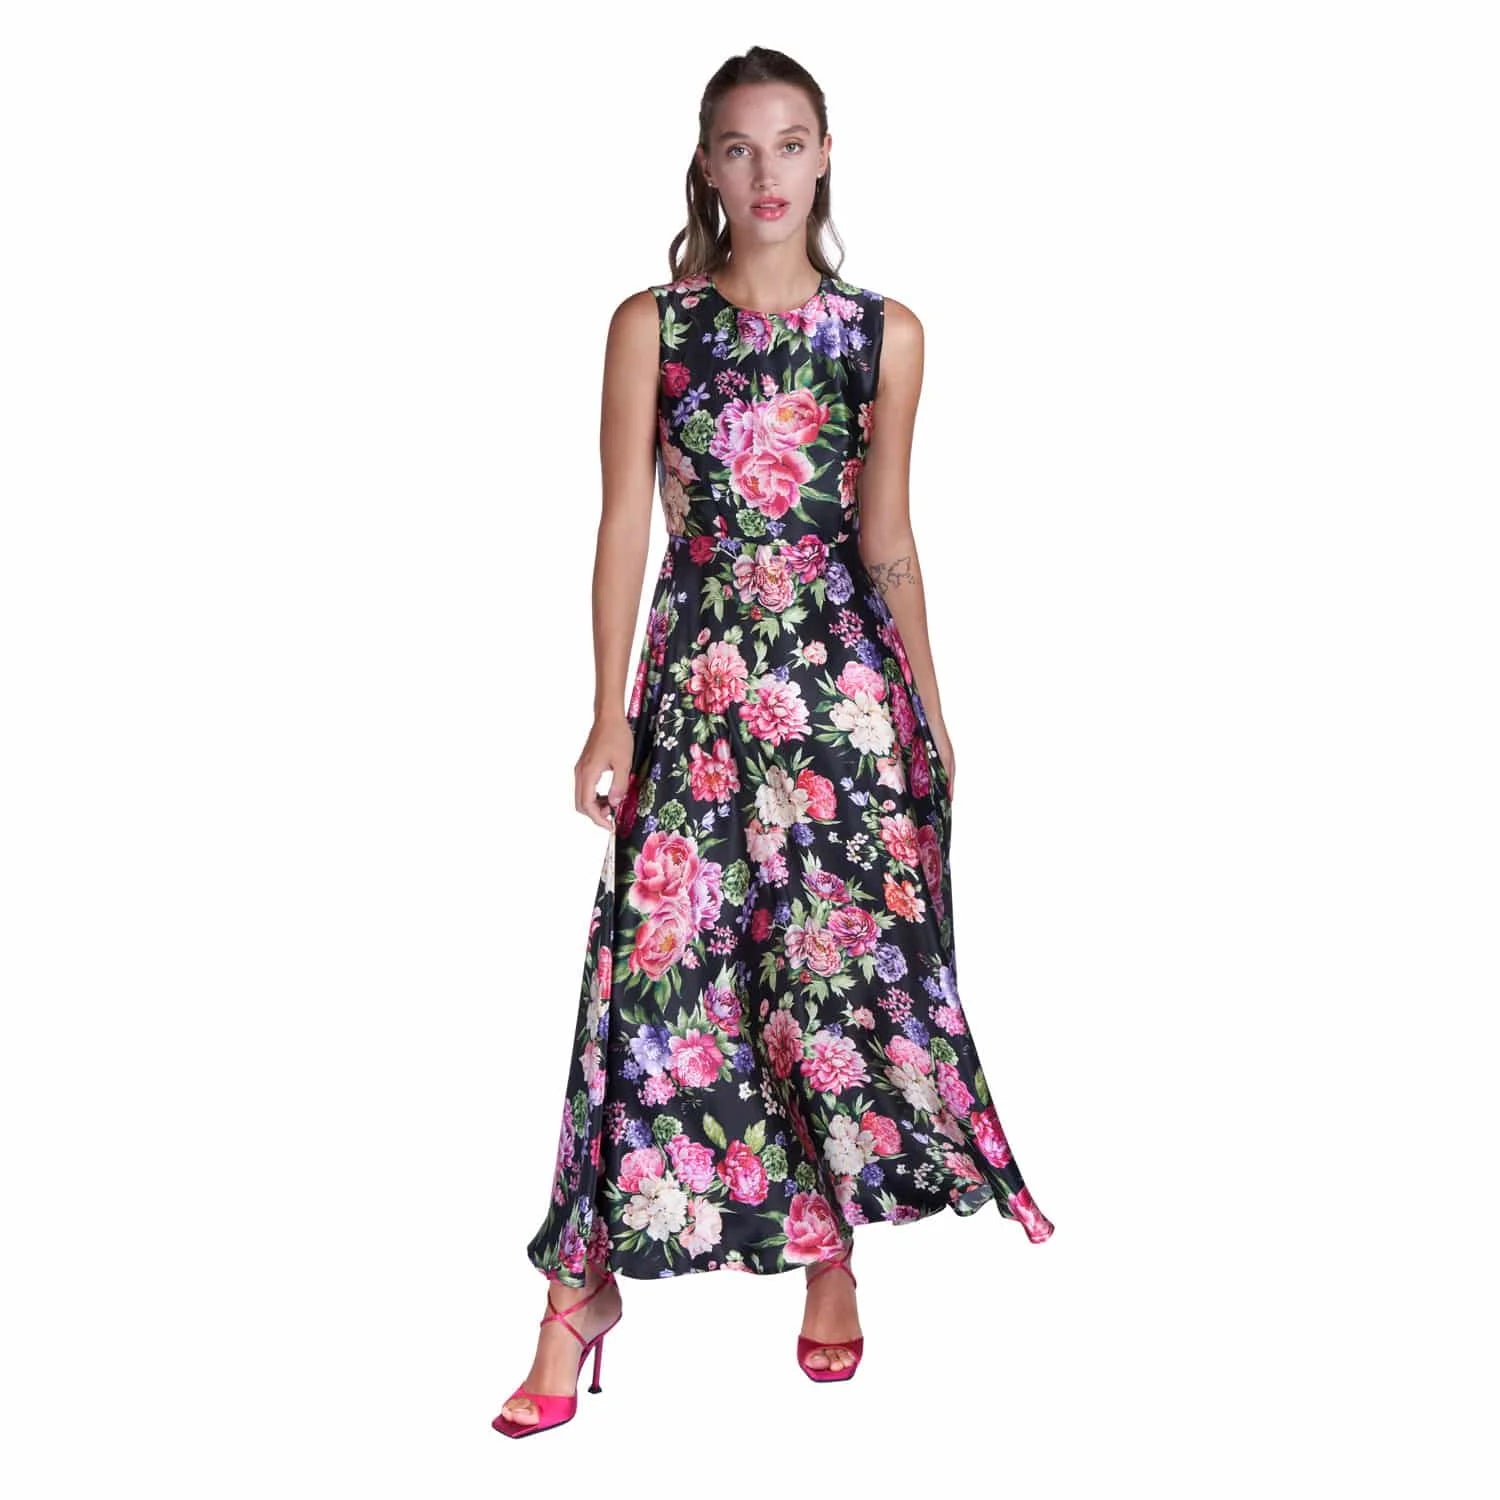 Floral print evening dress - Dress